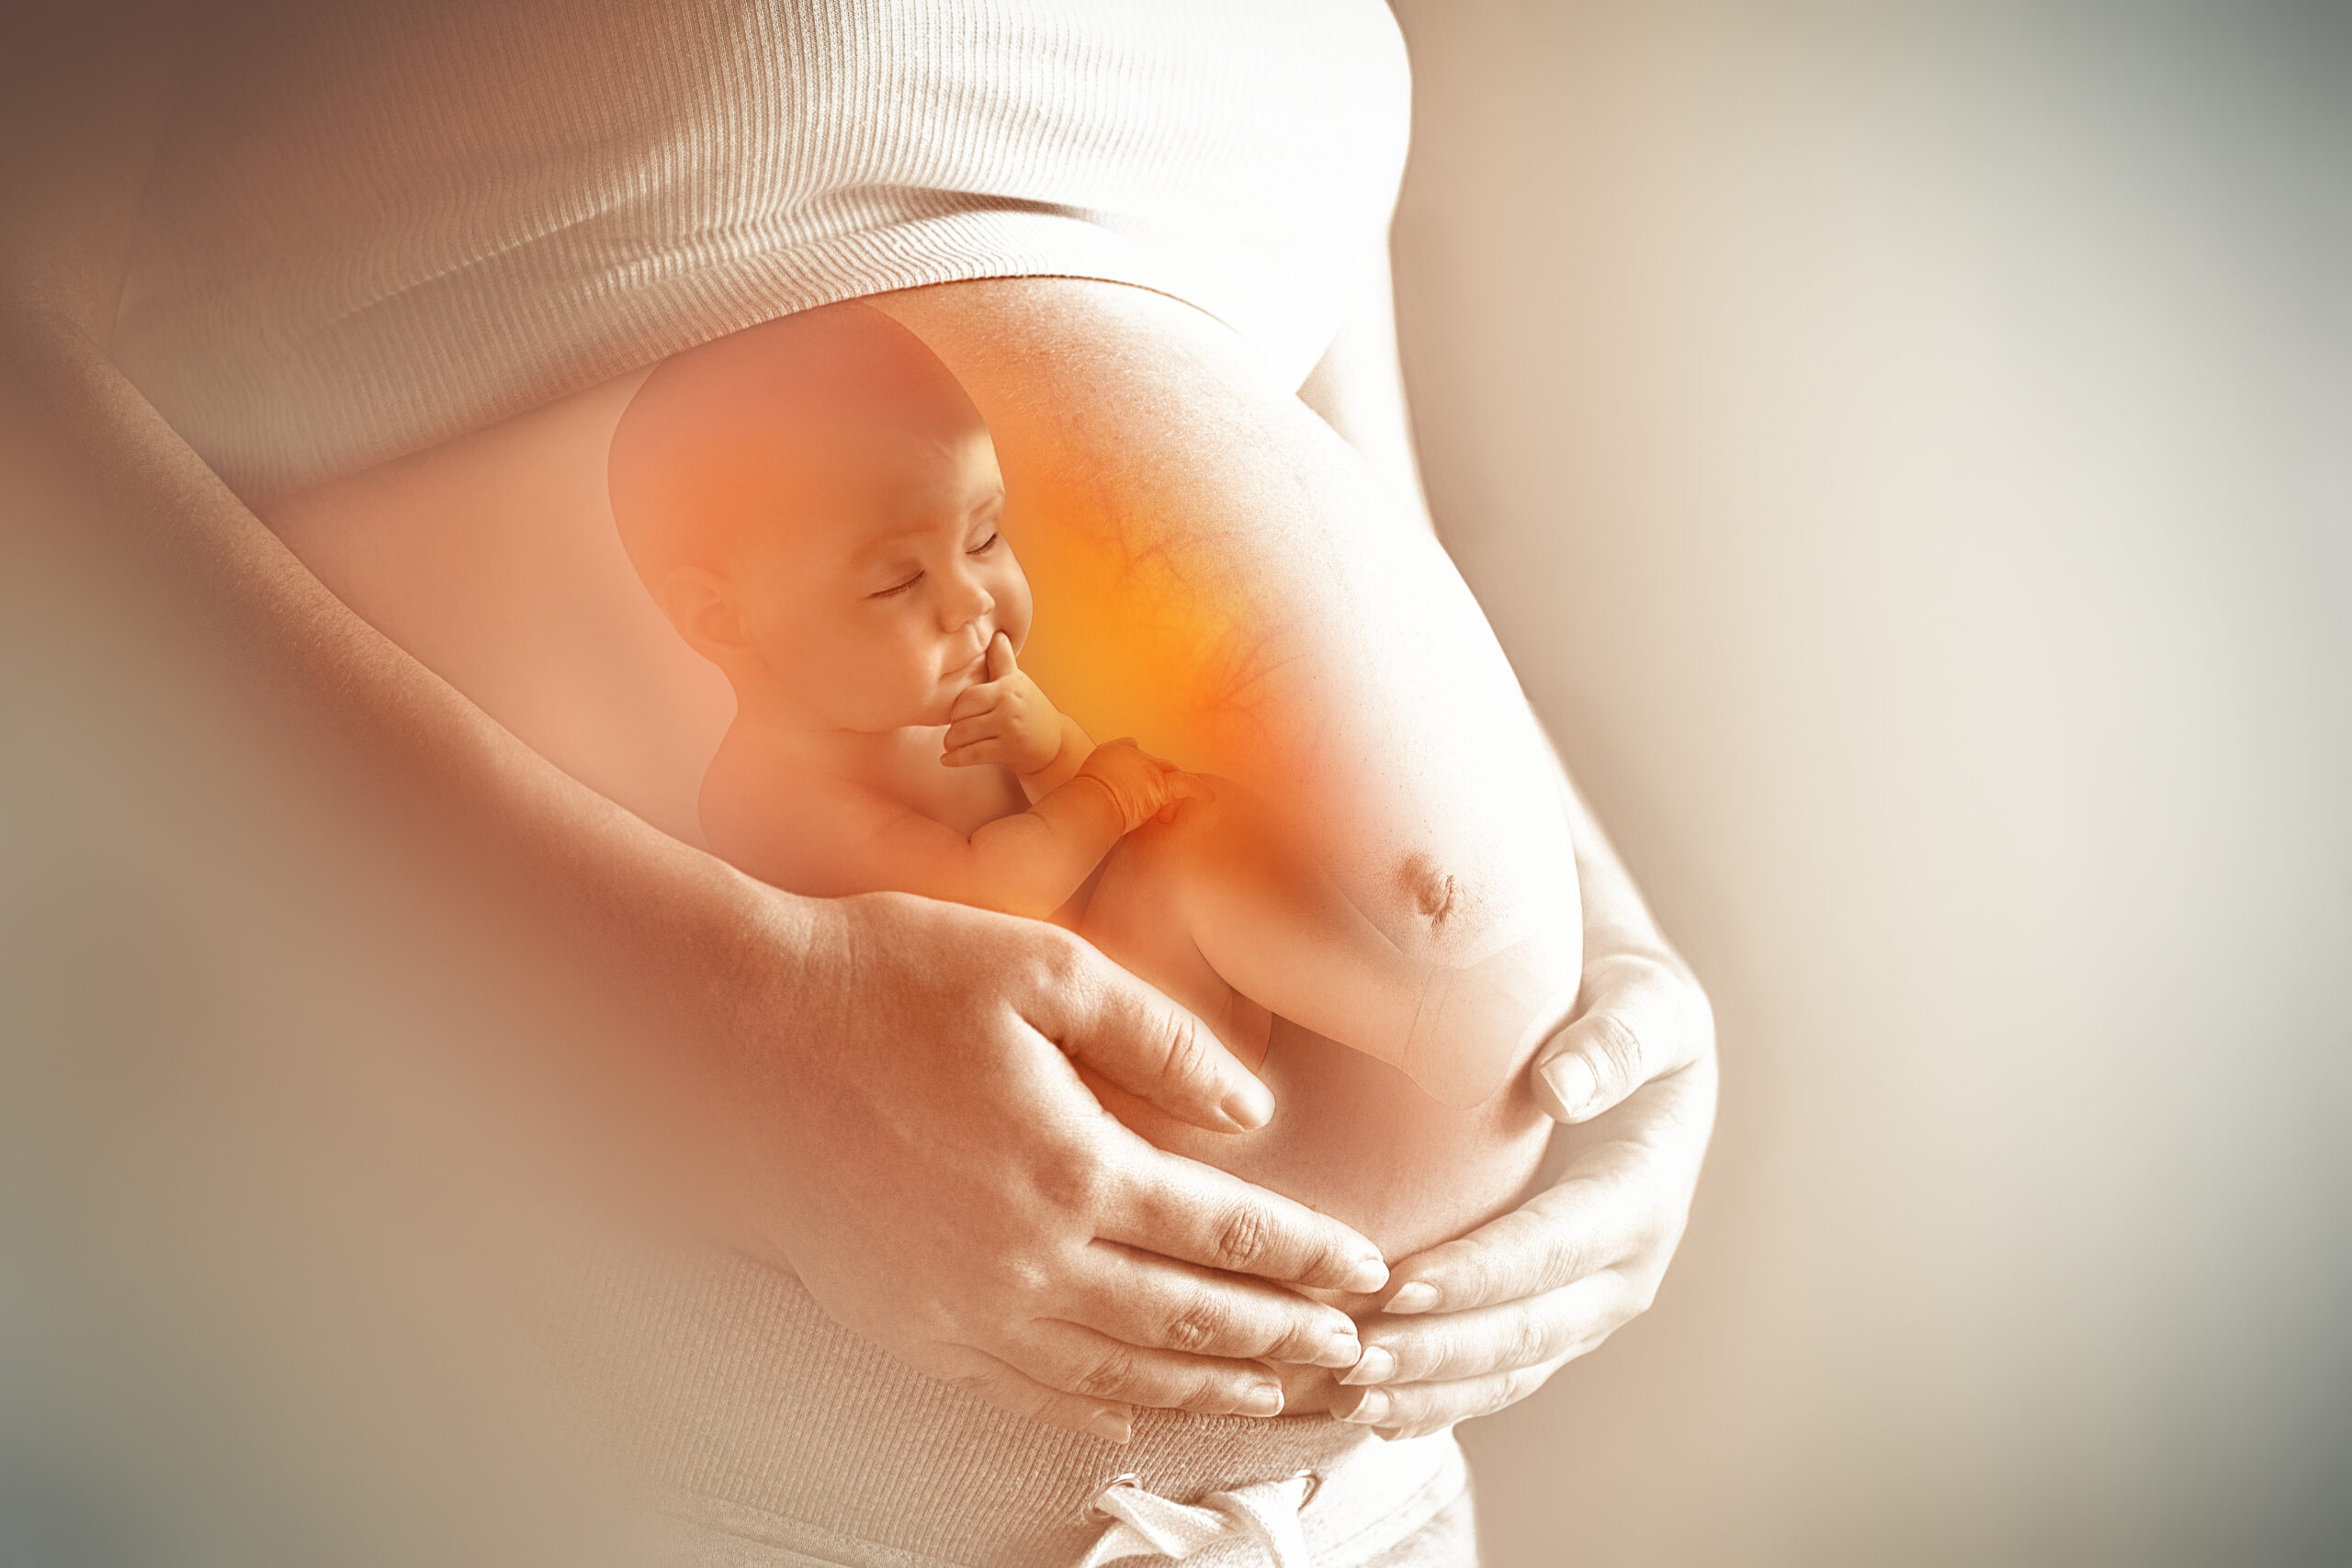 L'apprendimento del bimbo si avvia già in fase prenatale. Il parere dell'esperta